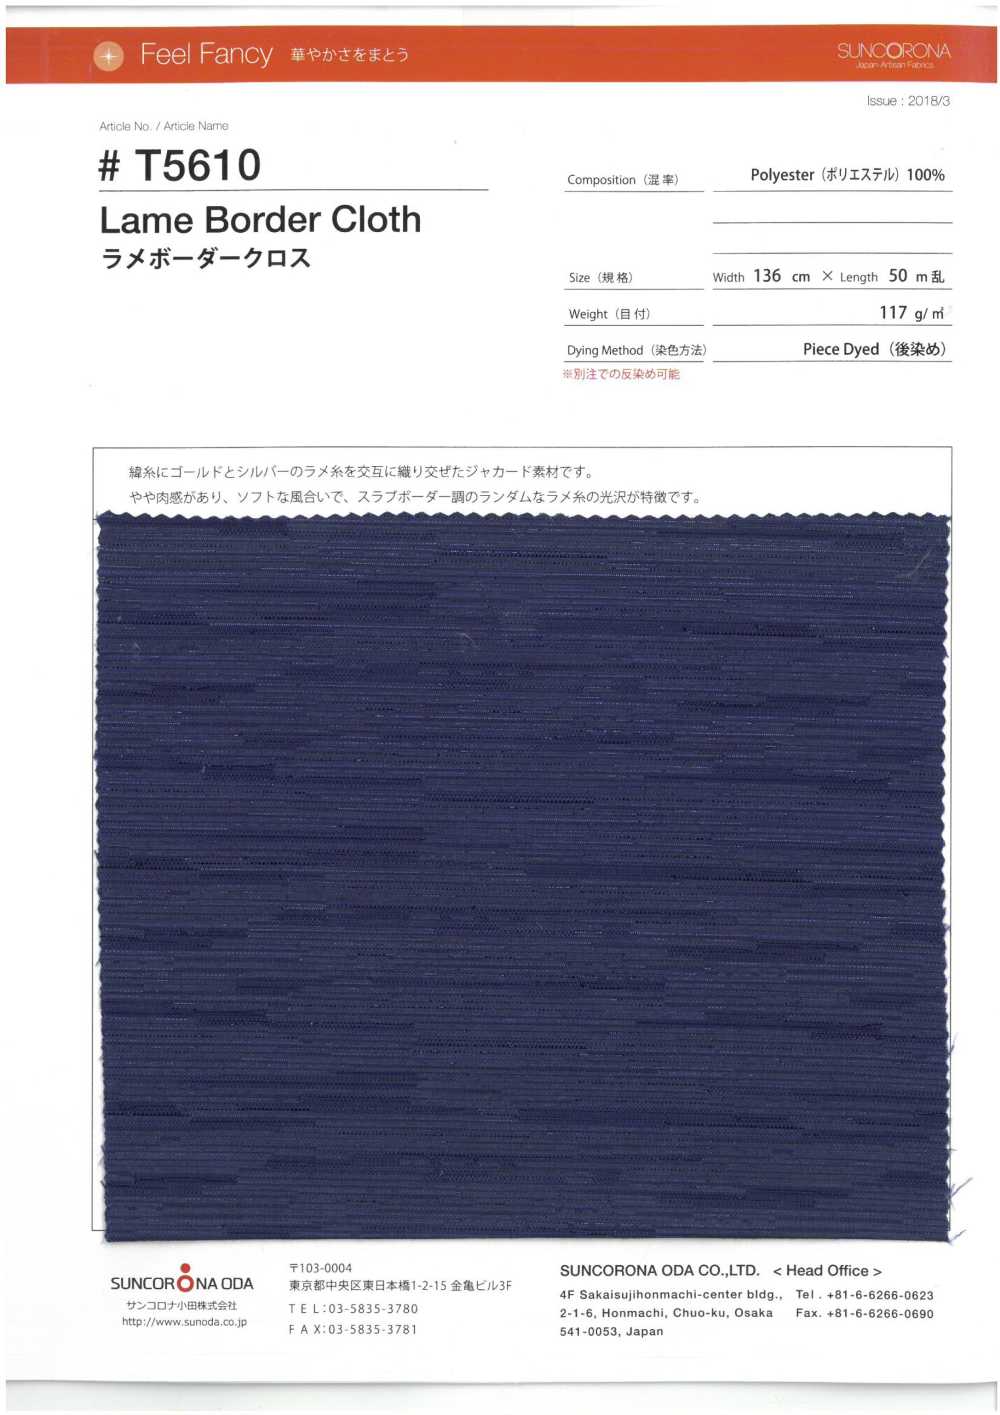 T5610 Lame Horizontal Stripe Jacquard[Textile / Fabric] Suncorona Oda